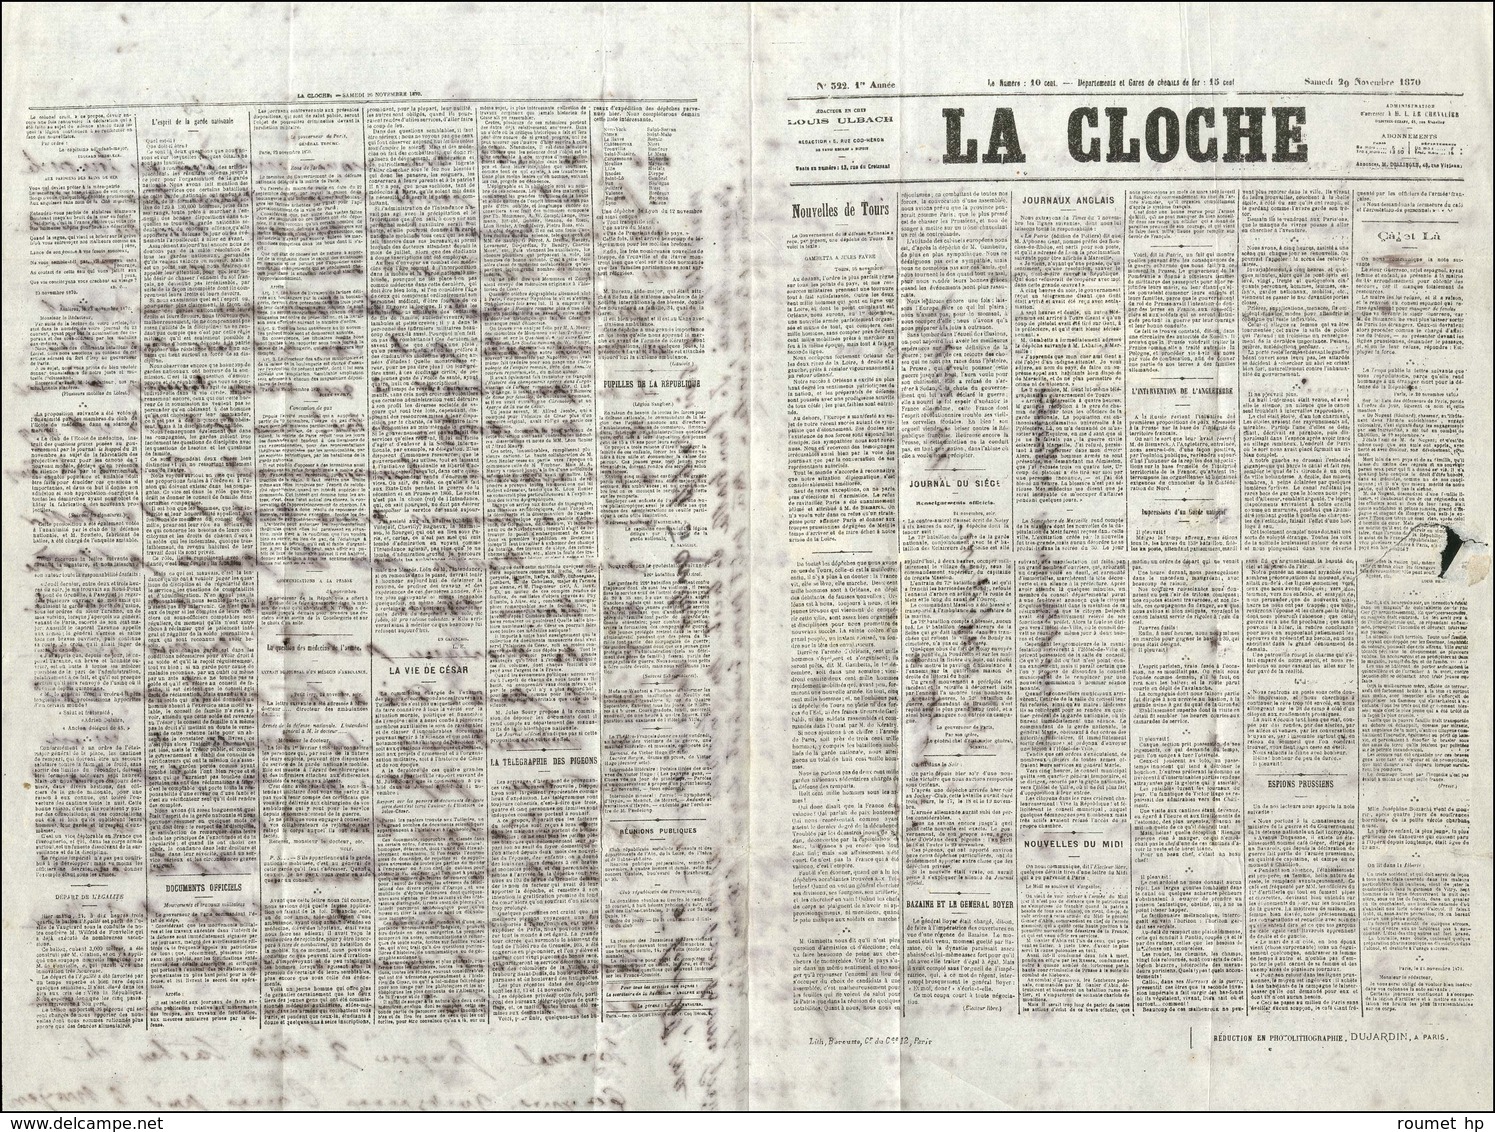 Càd Rouge PARIS (SC) 28 NOV. 70 / N° 29 Sur Journal La Cloche (accidenté) Pour Le Mans, Càd D'arrivée 27 DEC. 70. LE JAC - War 1870